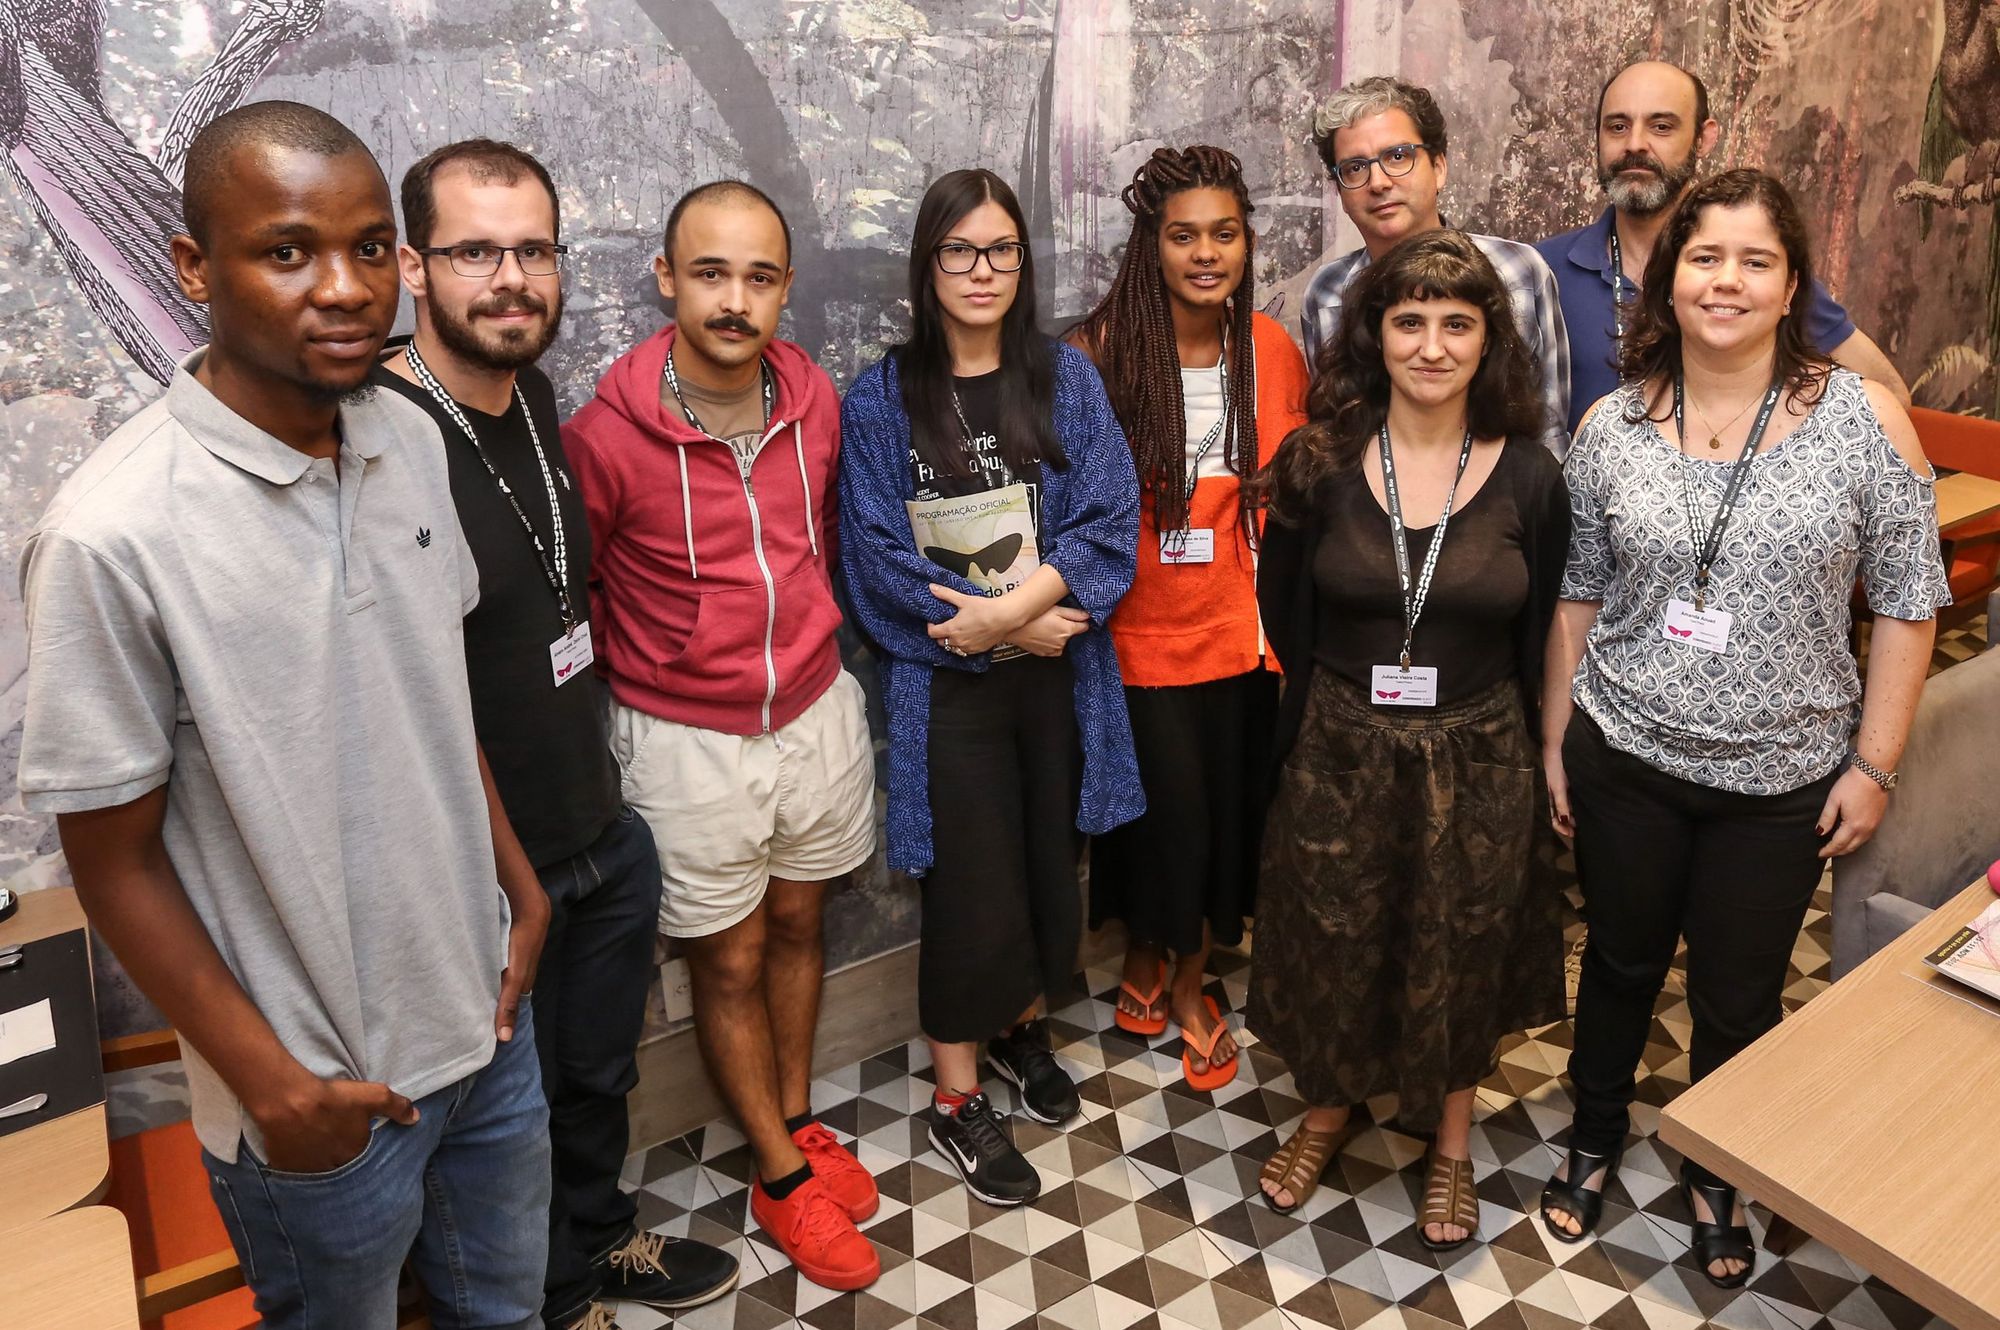 The participants and mentors of Talent Press Rio 2018 © Davi Campana, Festival do Rio